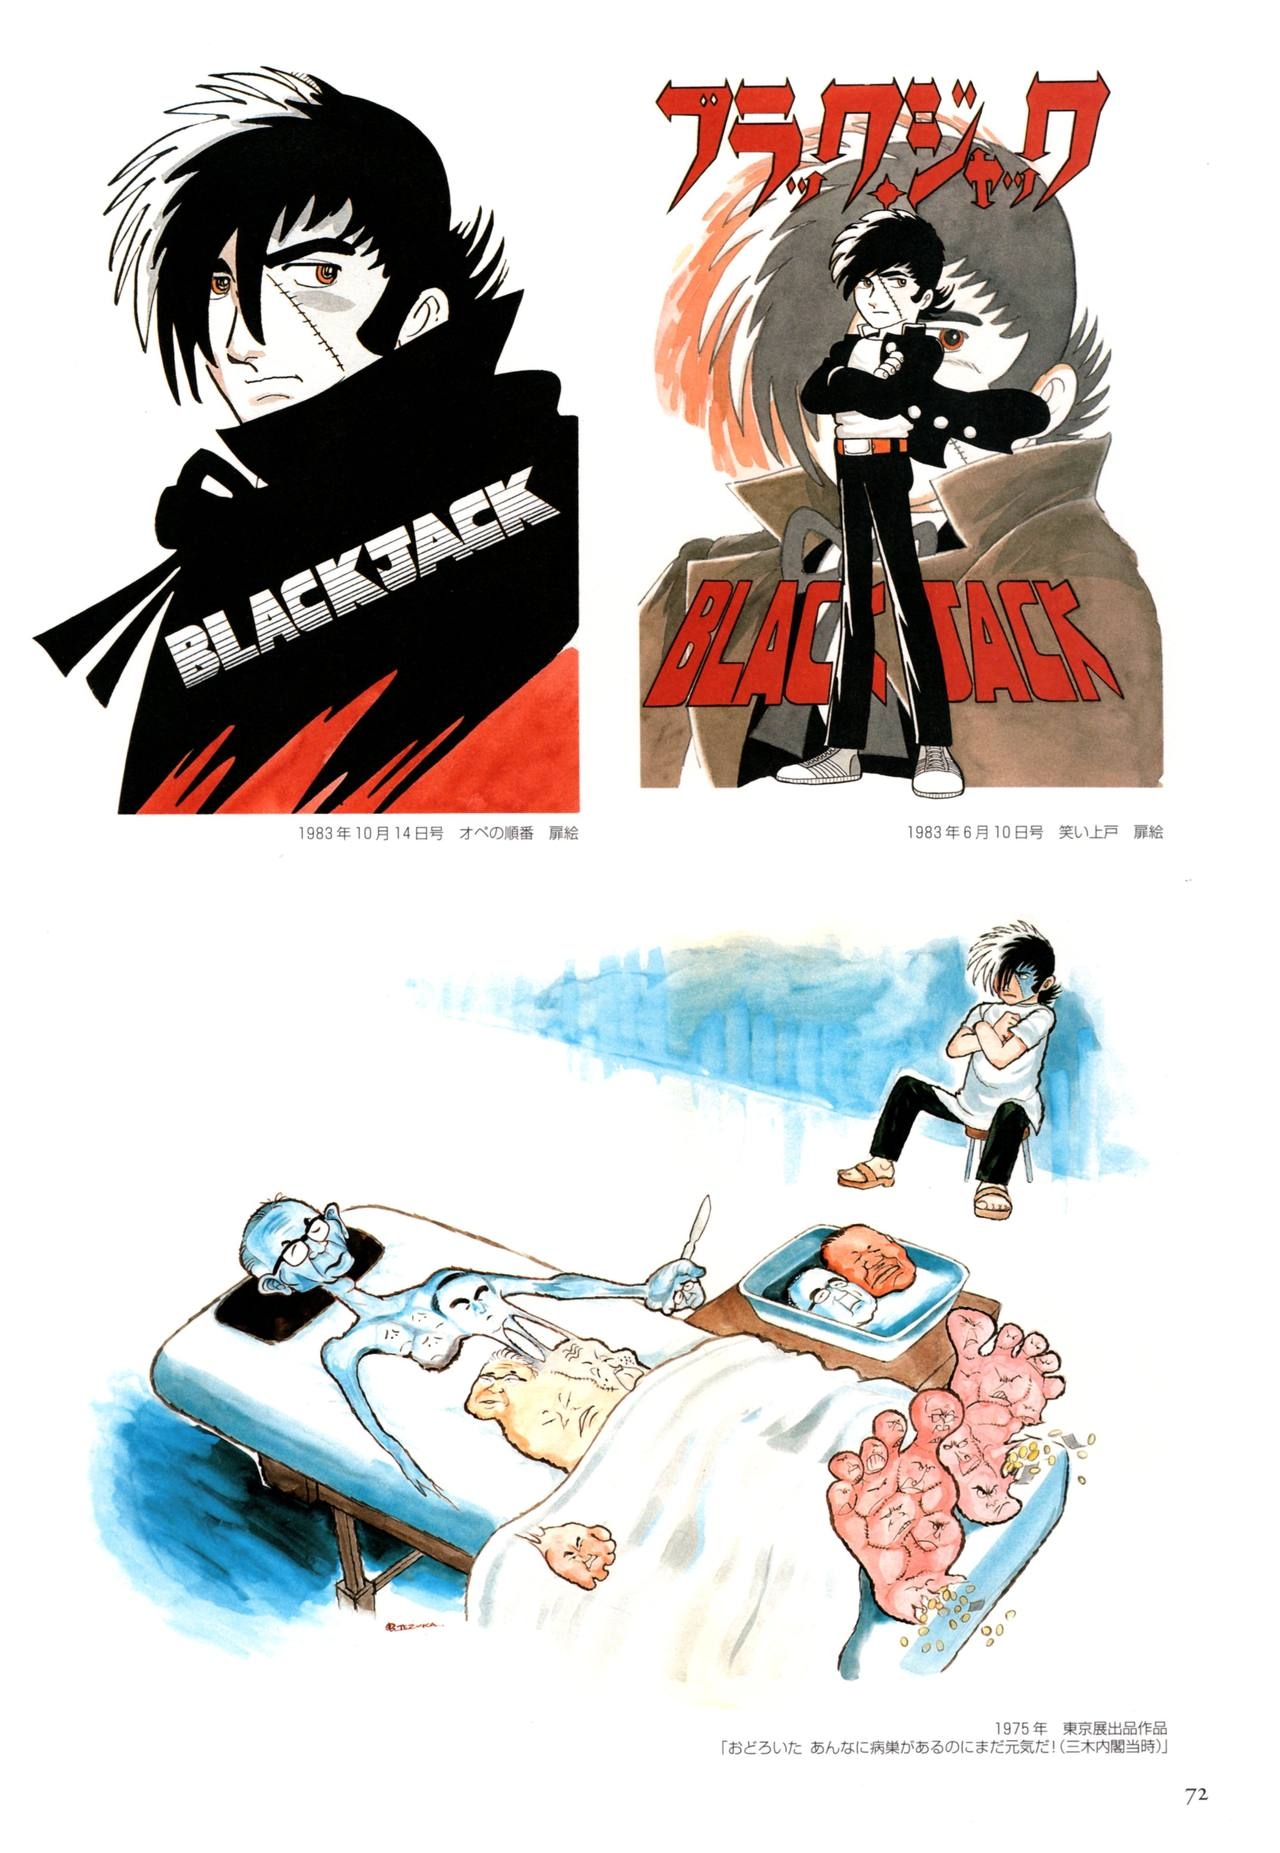 All of Black Jack By Osamu Tezuka 76